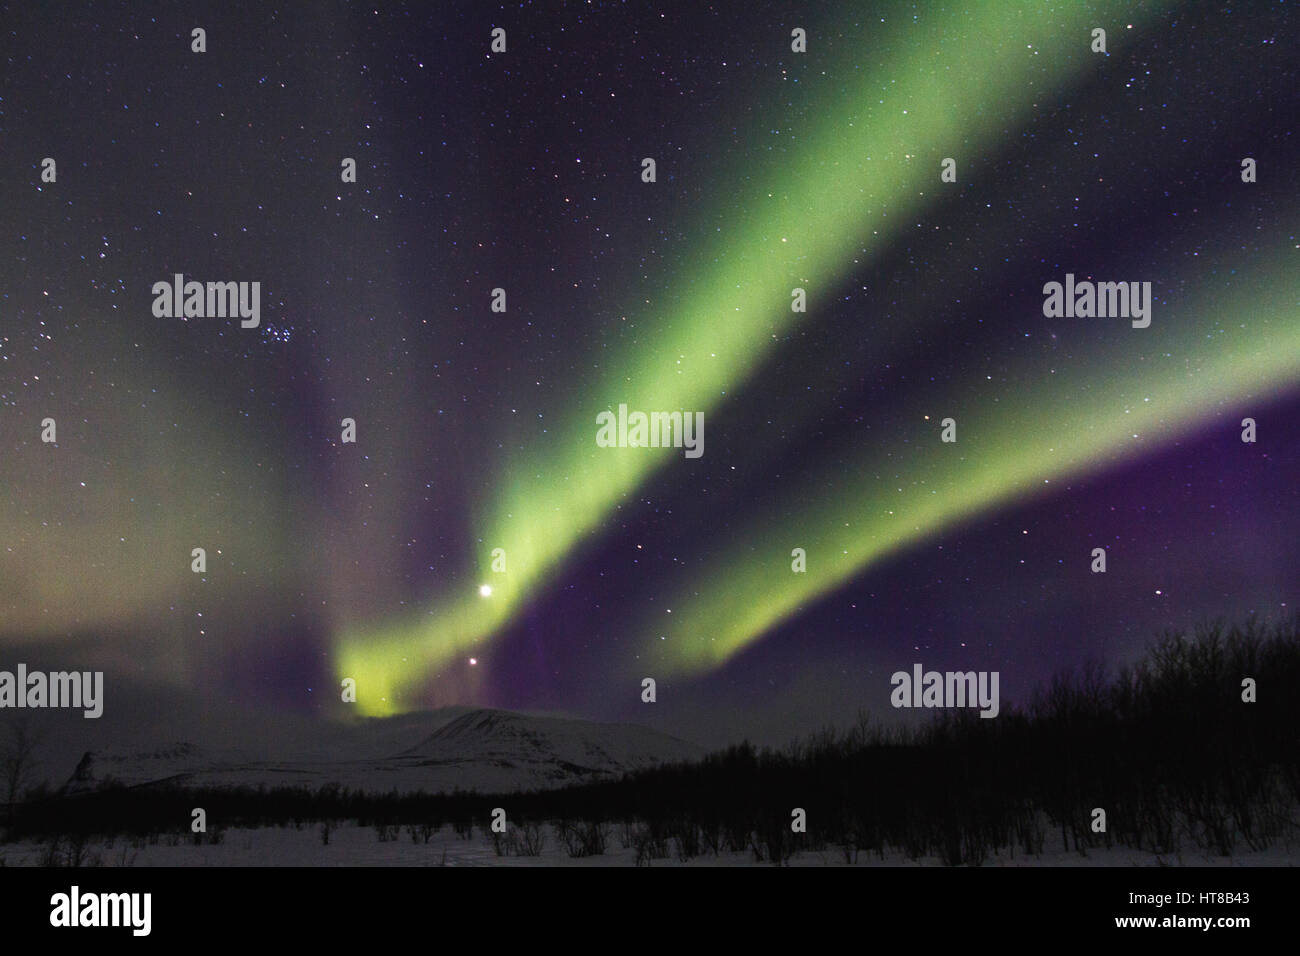 Northern light, Aurora borealis, over Nikkaluokta, mountains in background, auroa are violett, green, winter season, Kiruna, Swedish Lapland, Sweden Stock Photo